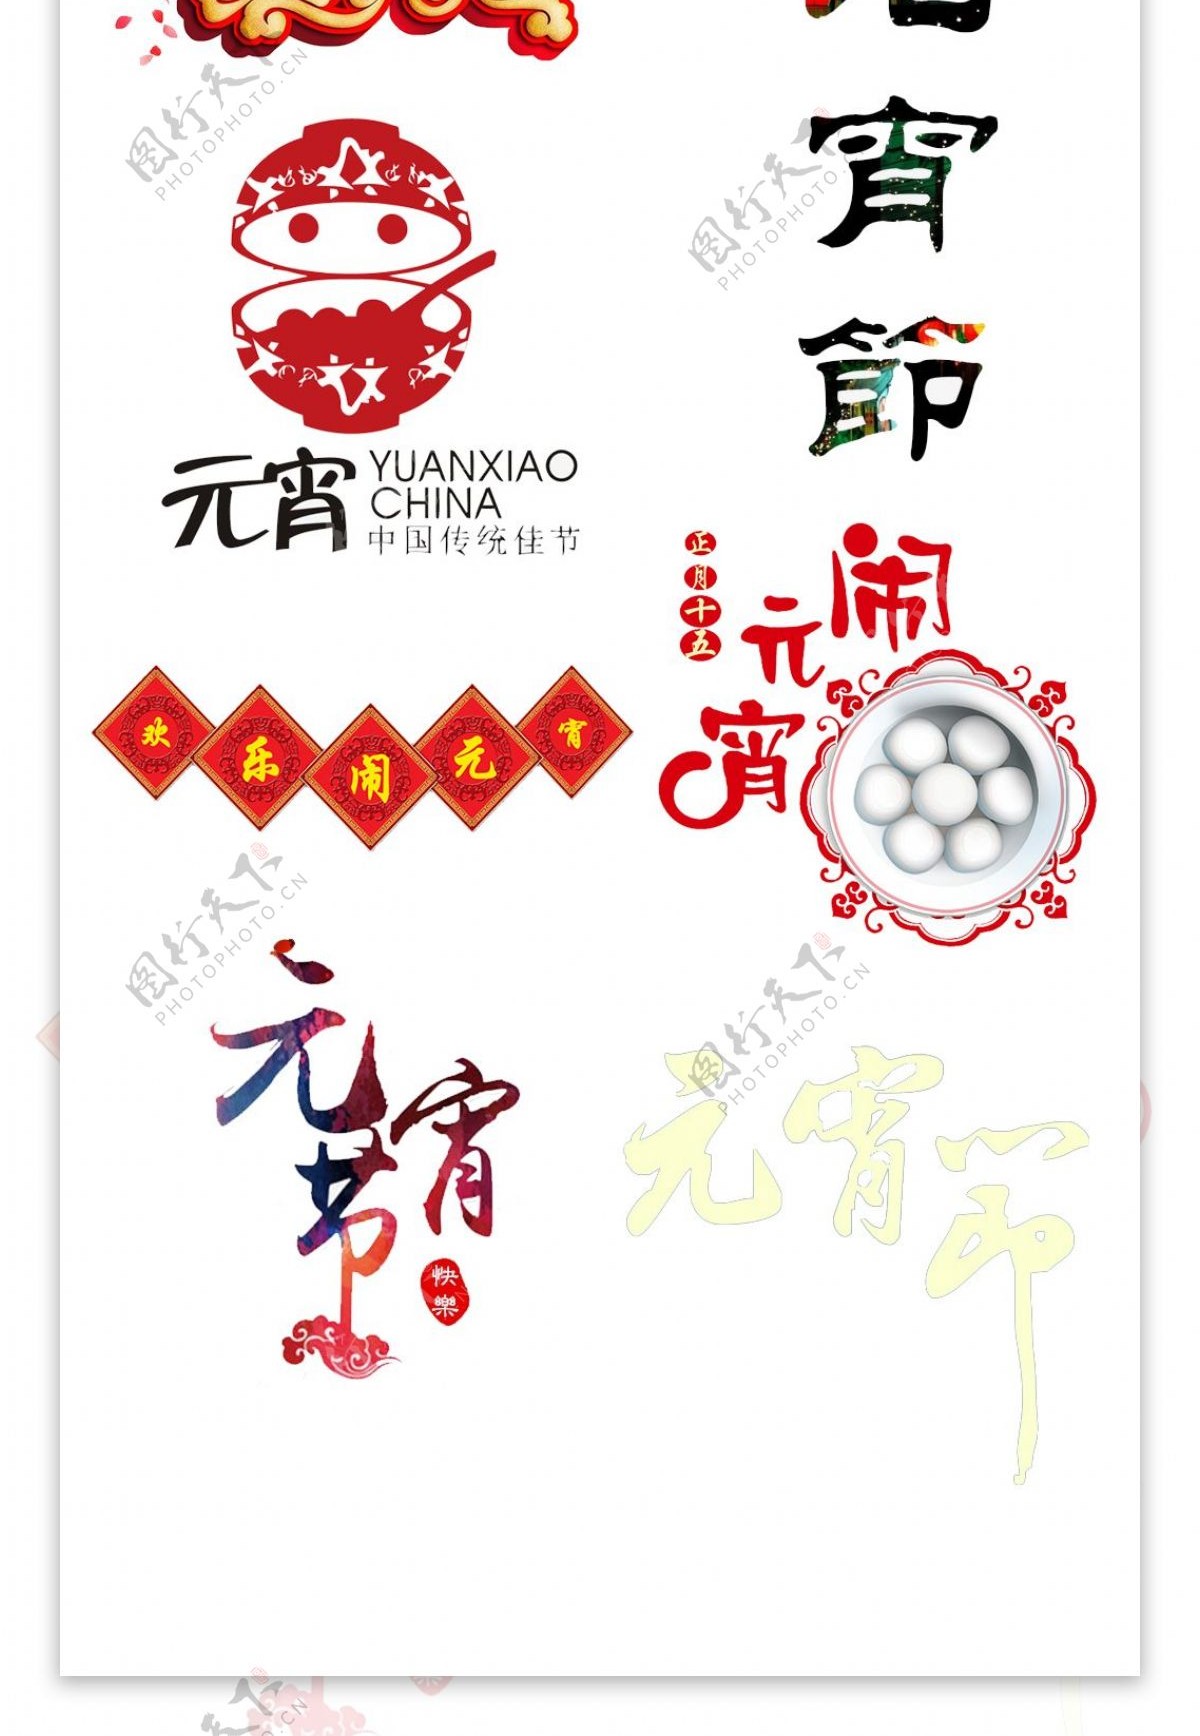 元宵节logo设计素材免费下载